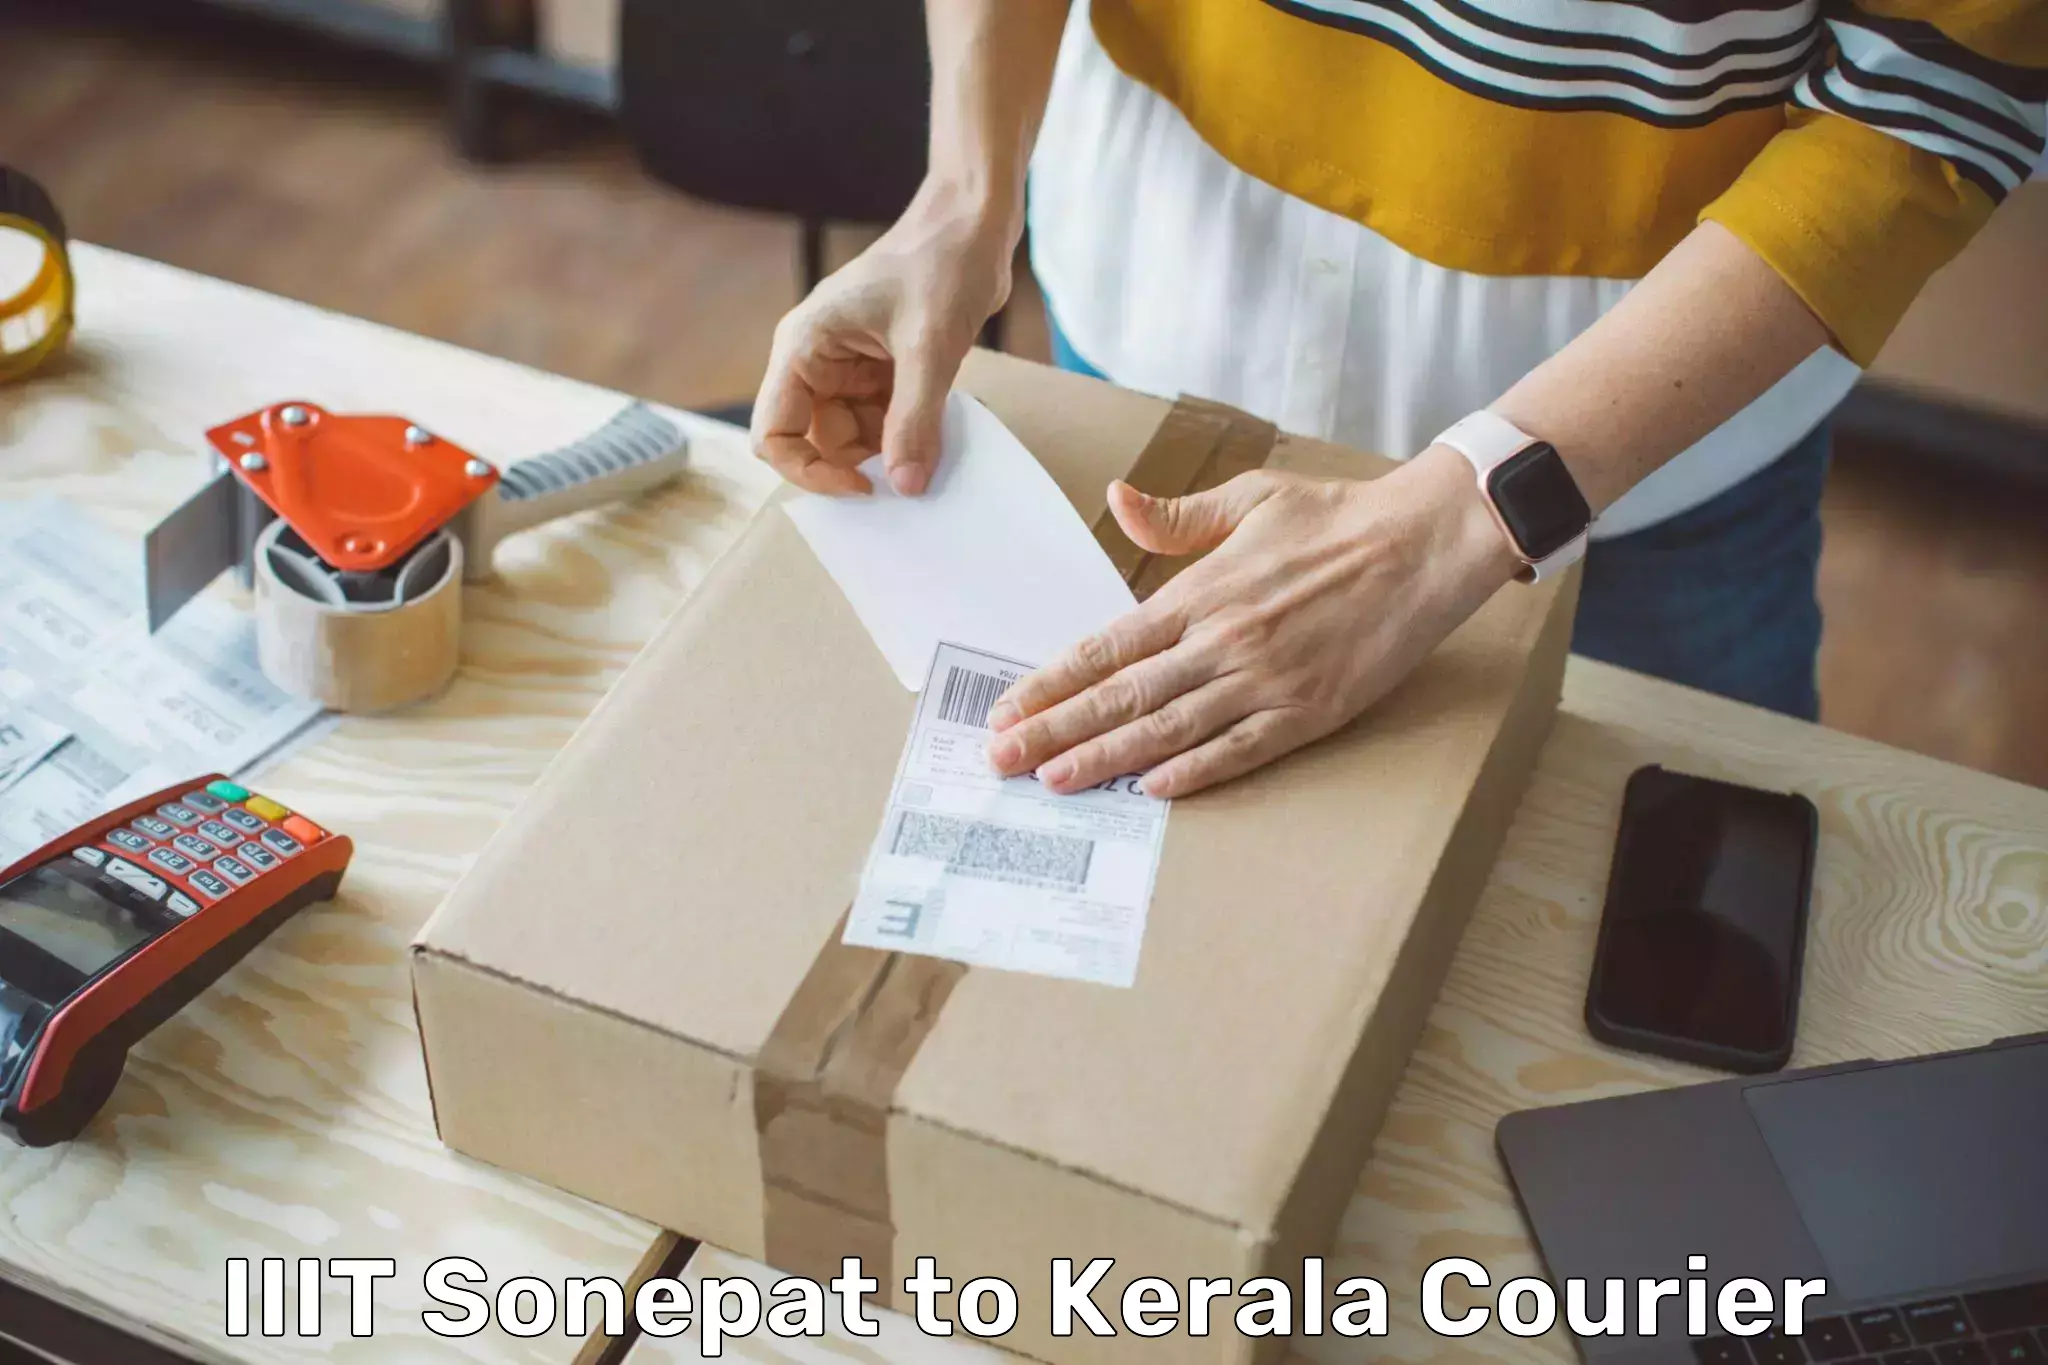 Comprehensive logistics IIIT Sonepat to Kerala